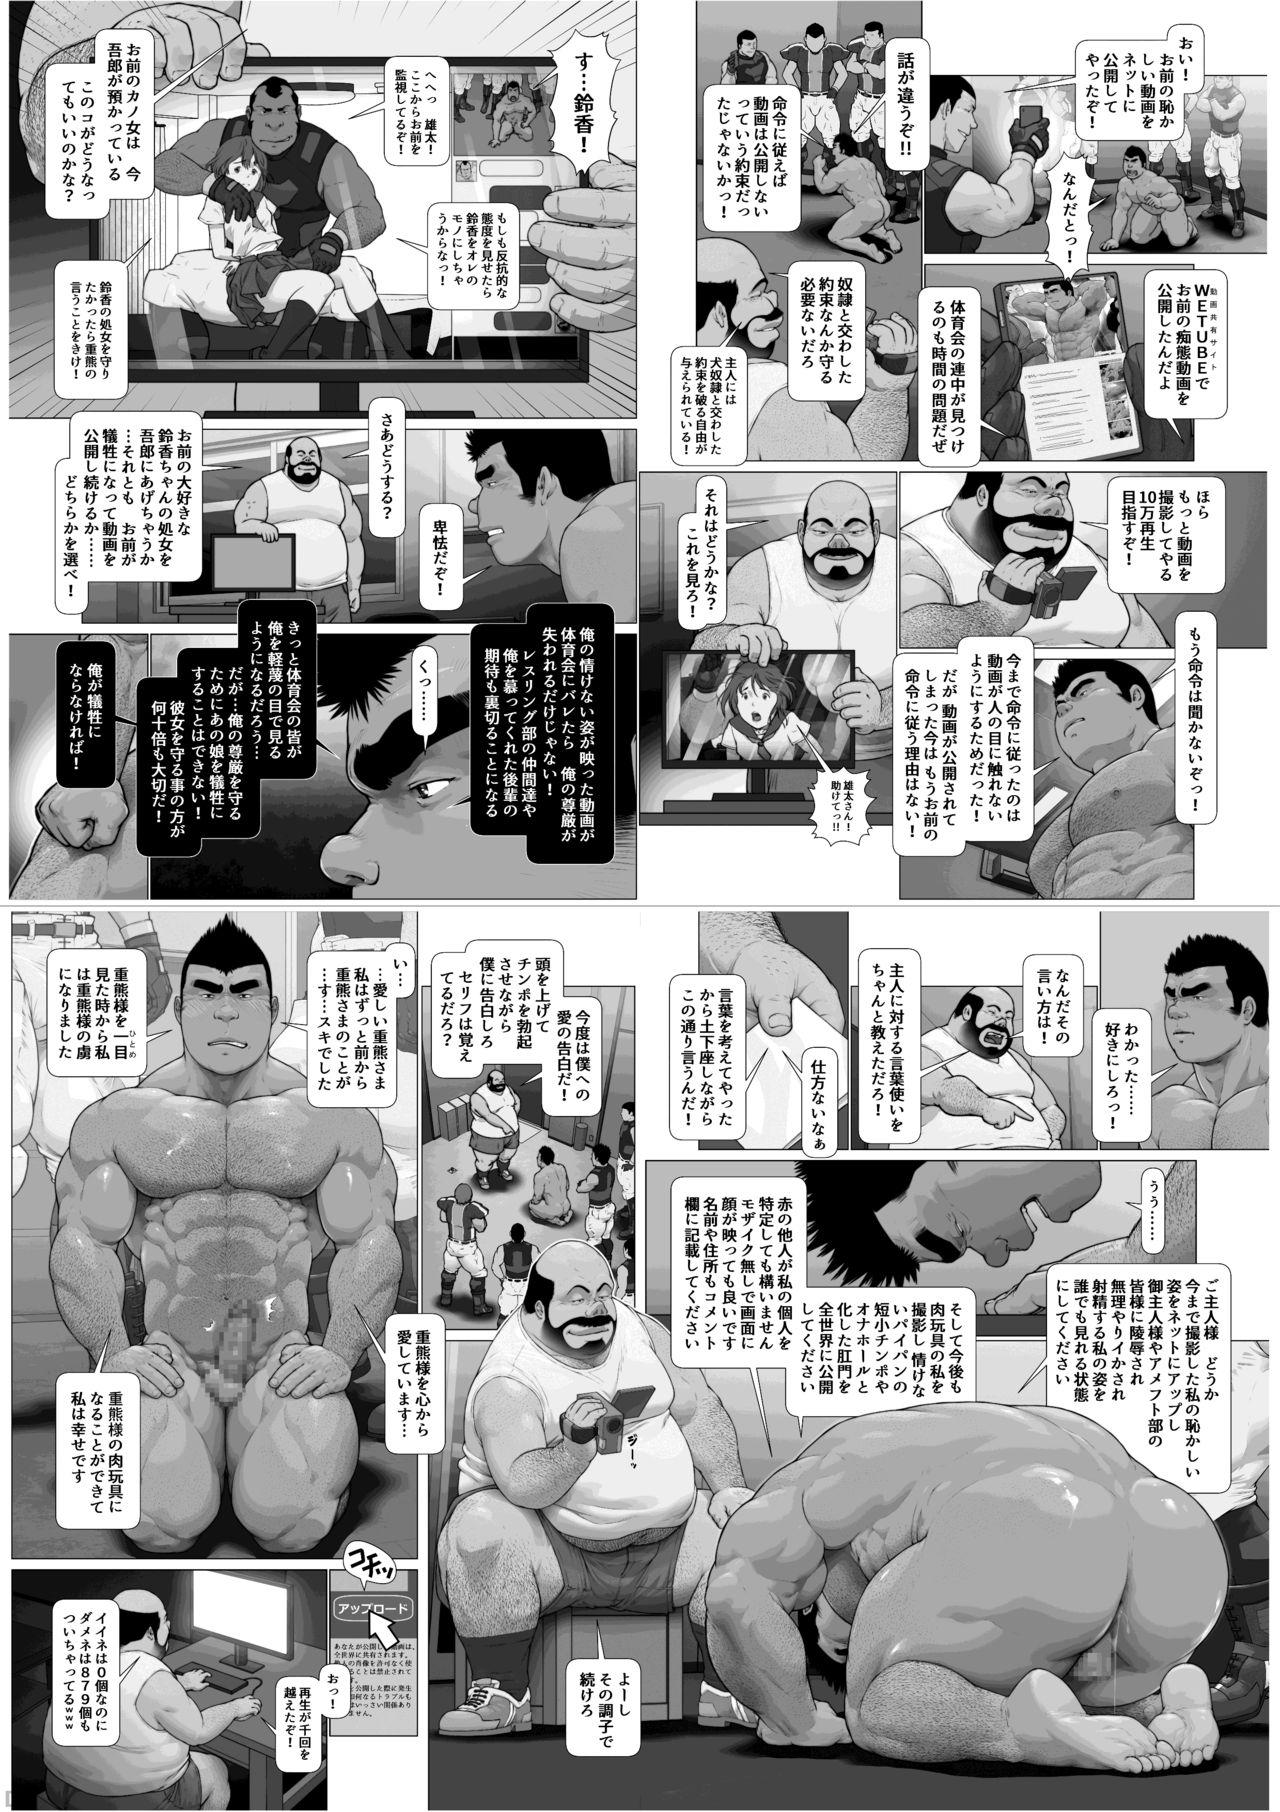 [frontierkiss (Kai Makoto)] Nanji no Teki o Aise Kouhen: Osuinu Dorei Shiiku Monogatari Dai 2-shou 2-wa (22b) [Digital] 34